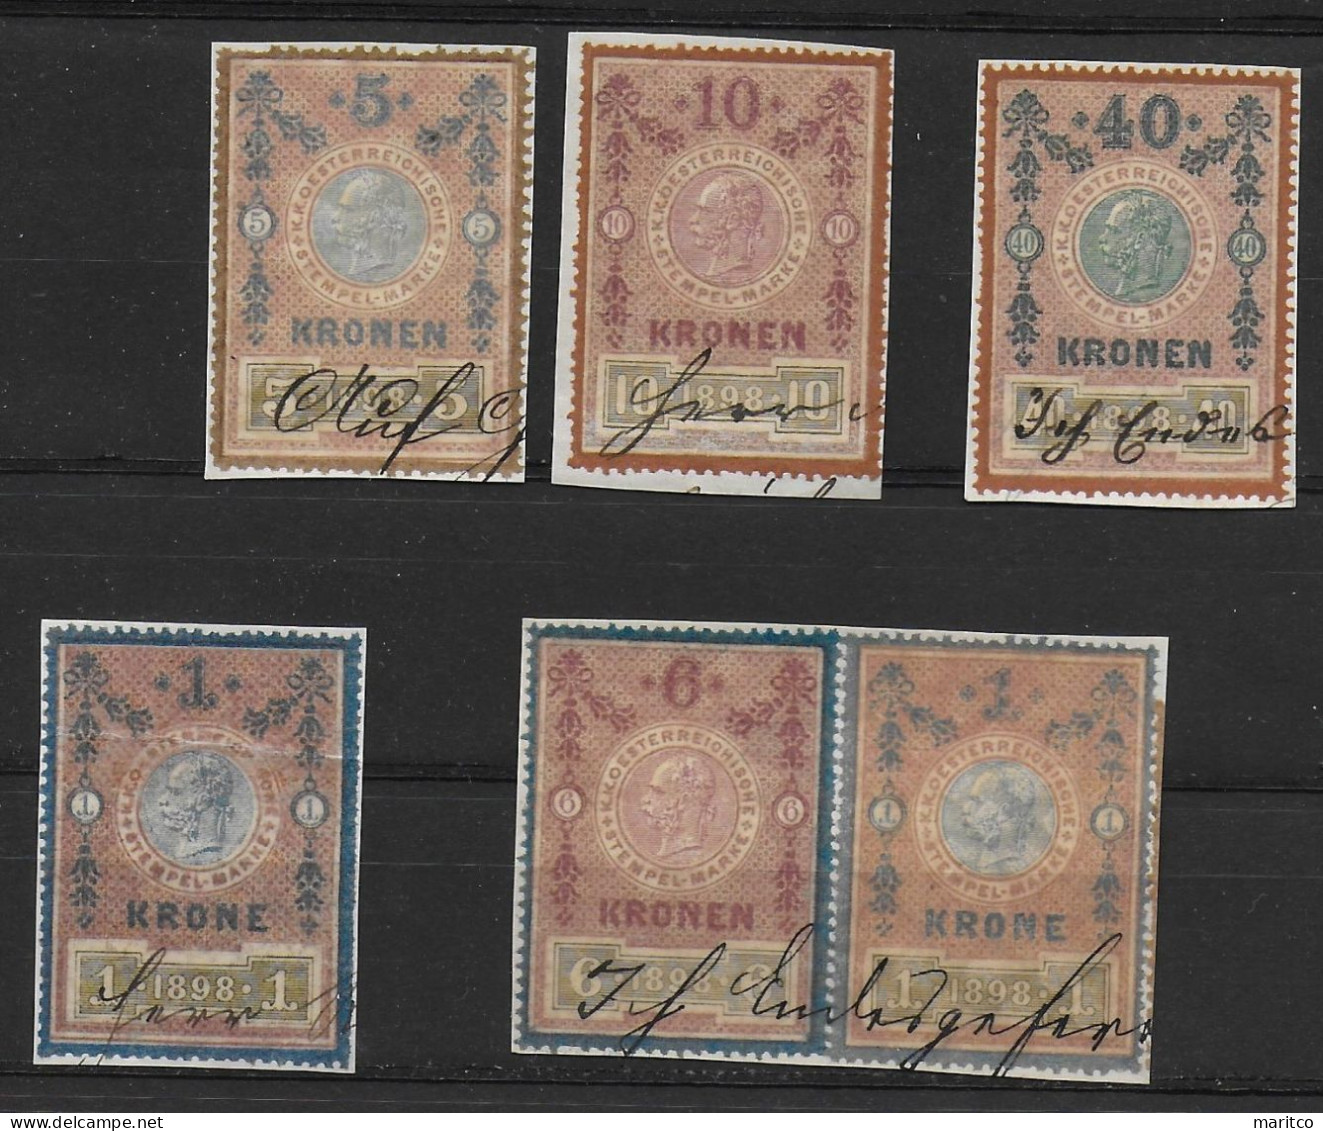 Österreich Lot Stempelmarken 1898 Fiscal Revenue Stamps - Steuermarken